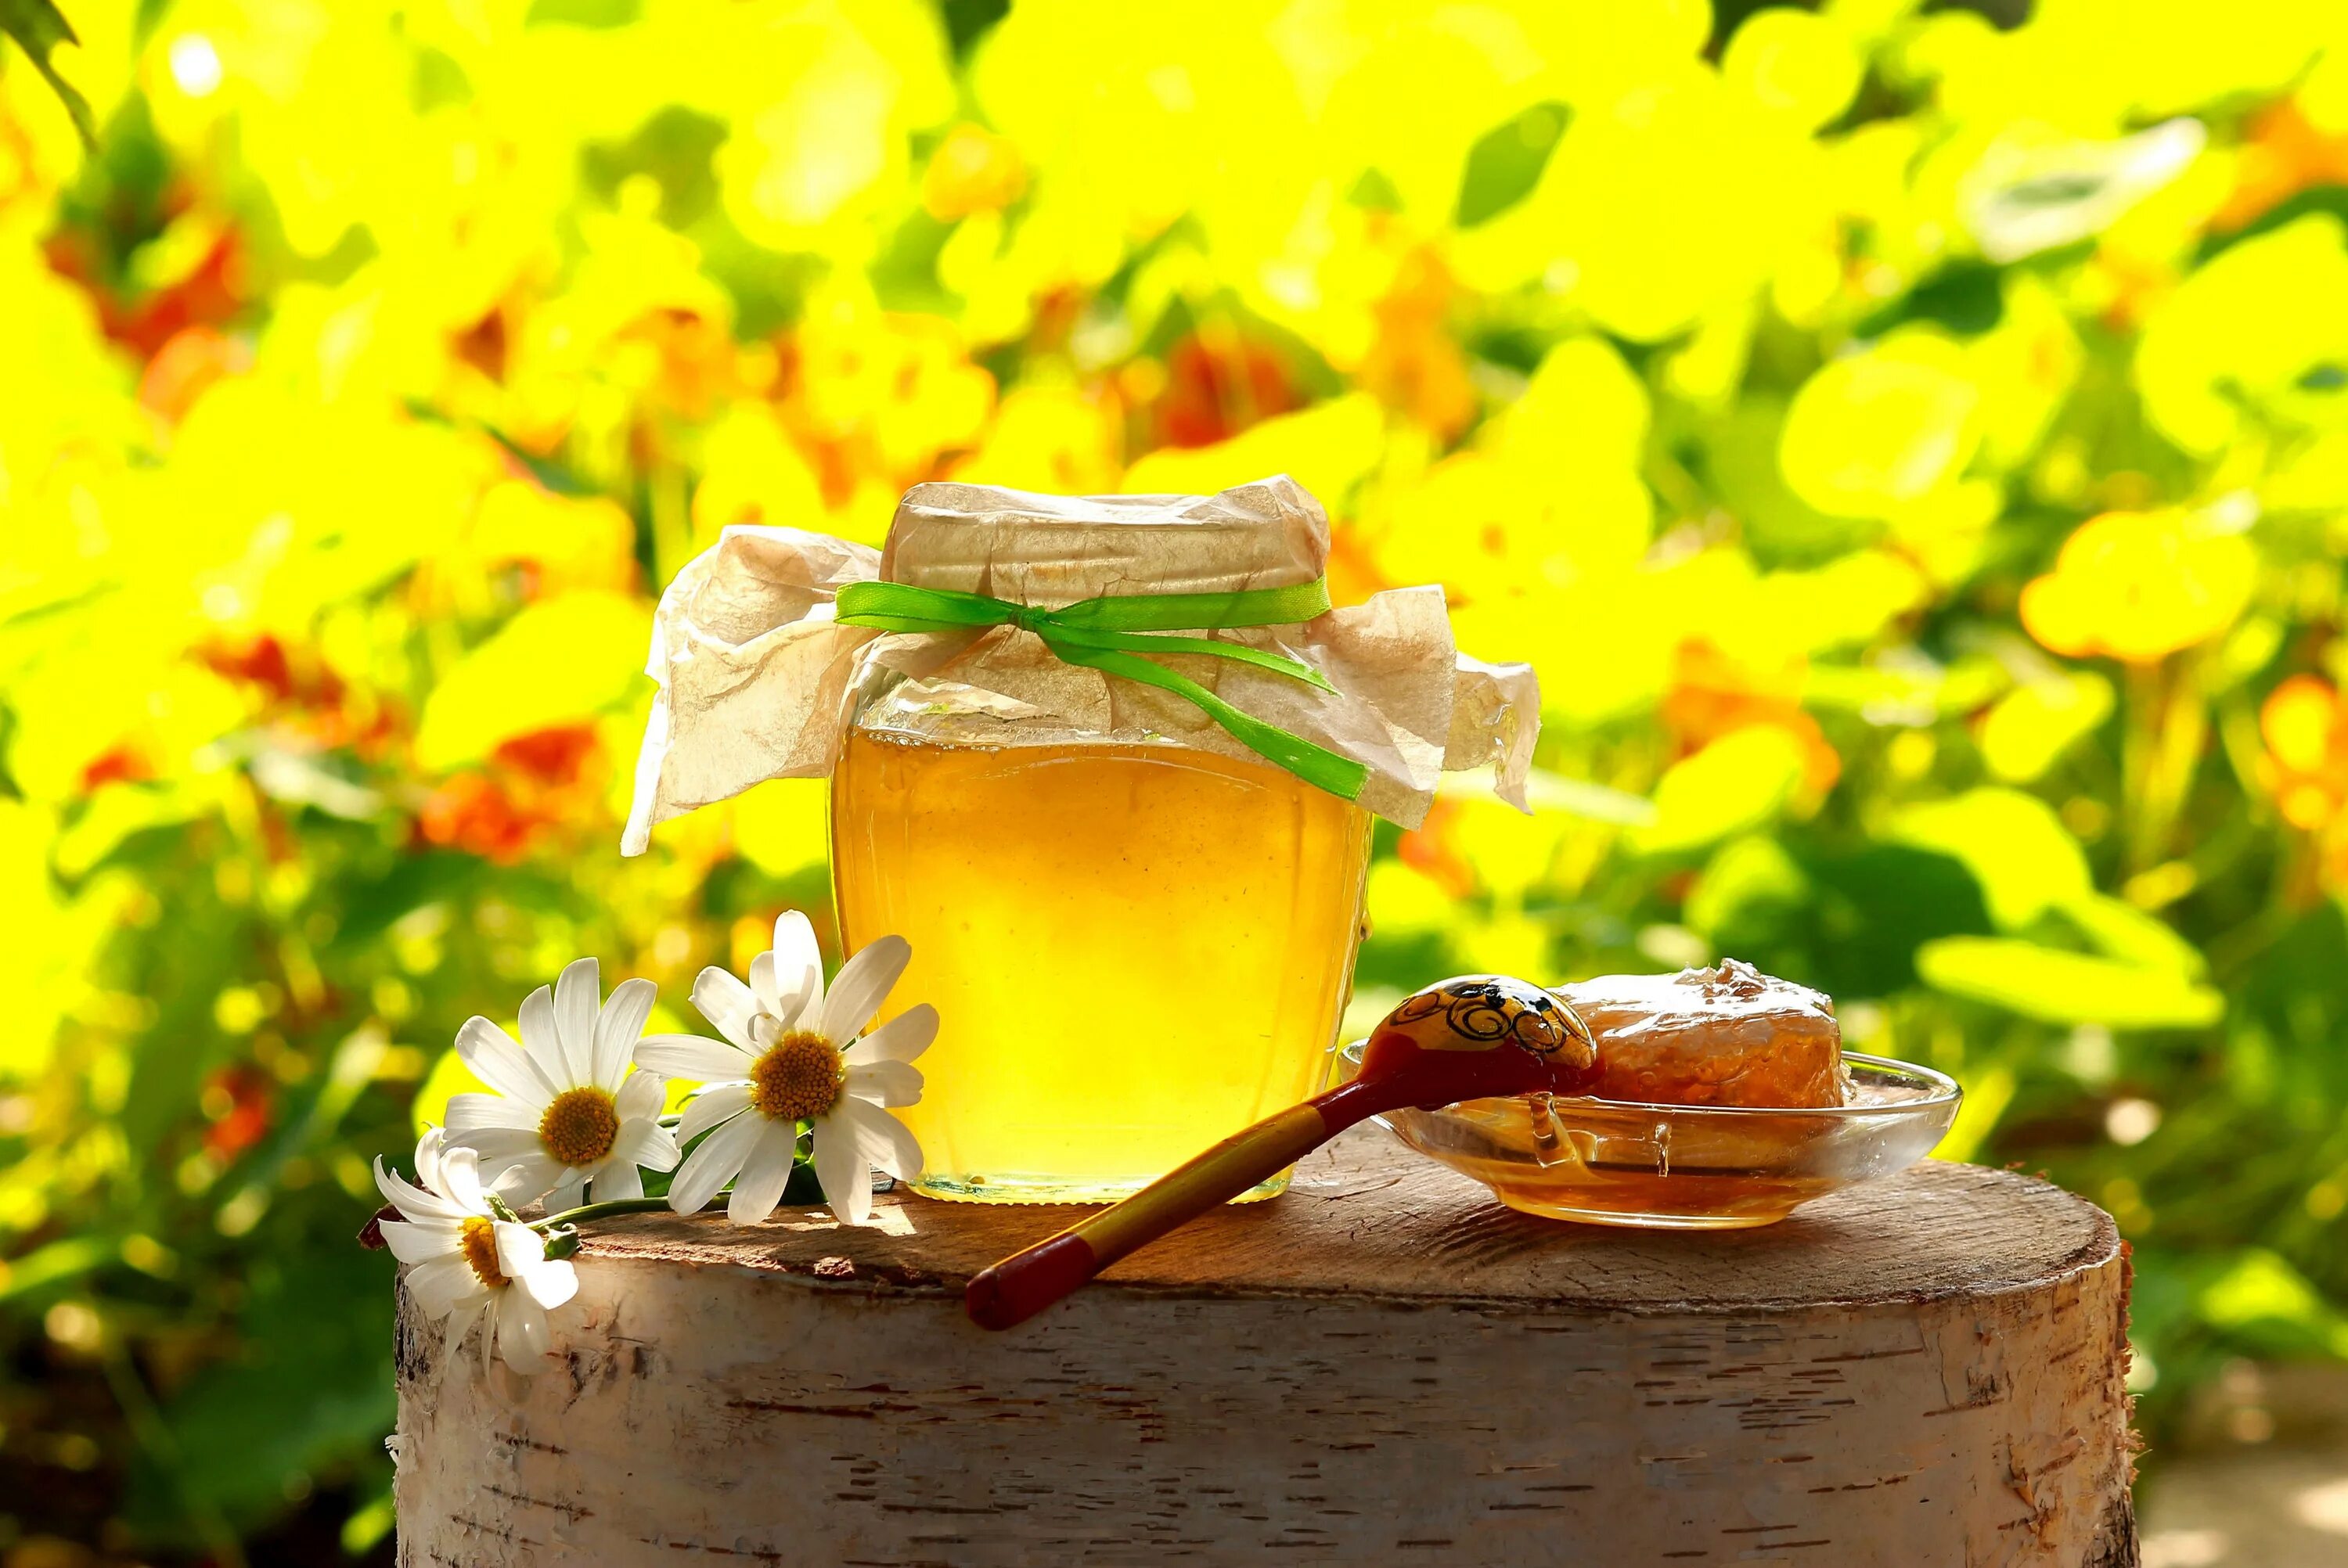 Воздух пахнет медом. Мед медовый спас разнотравье. Мед в природе. Пчелы мед "Луговой" Алтайское разнотравье. Лето в баночке.